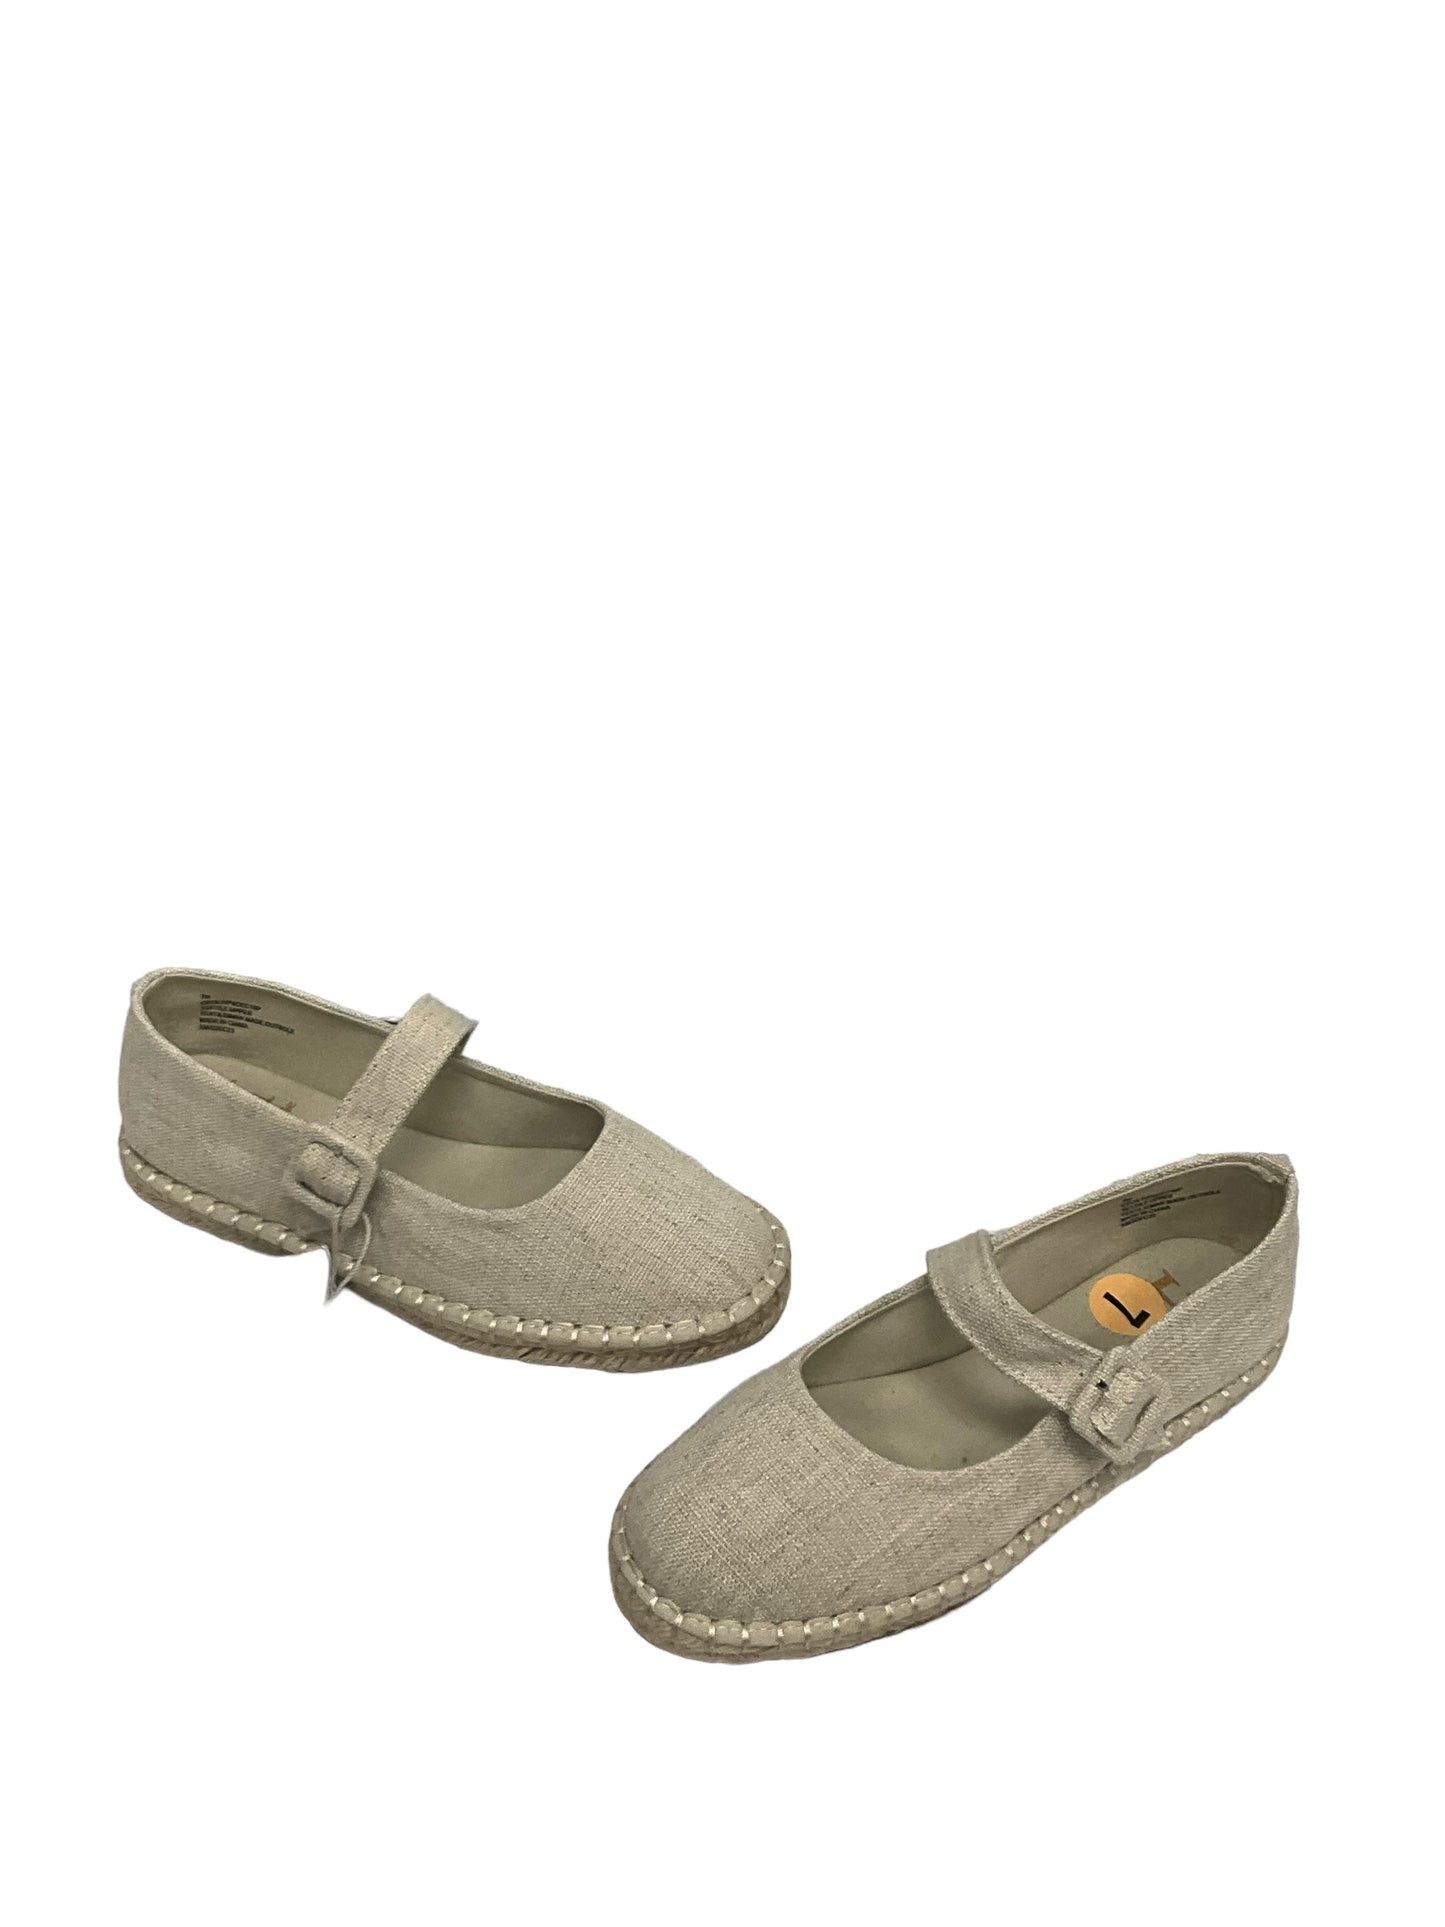 Sandals Flats By Haute Hippie  Size: 7